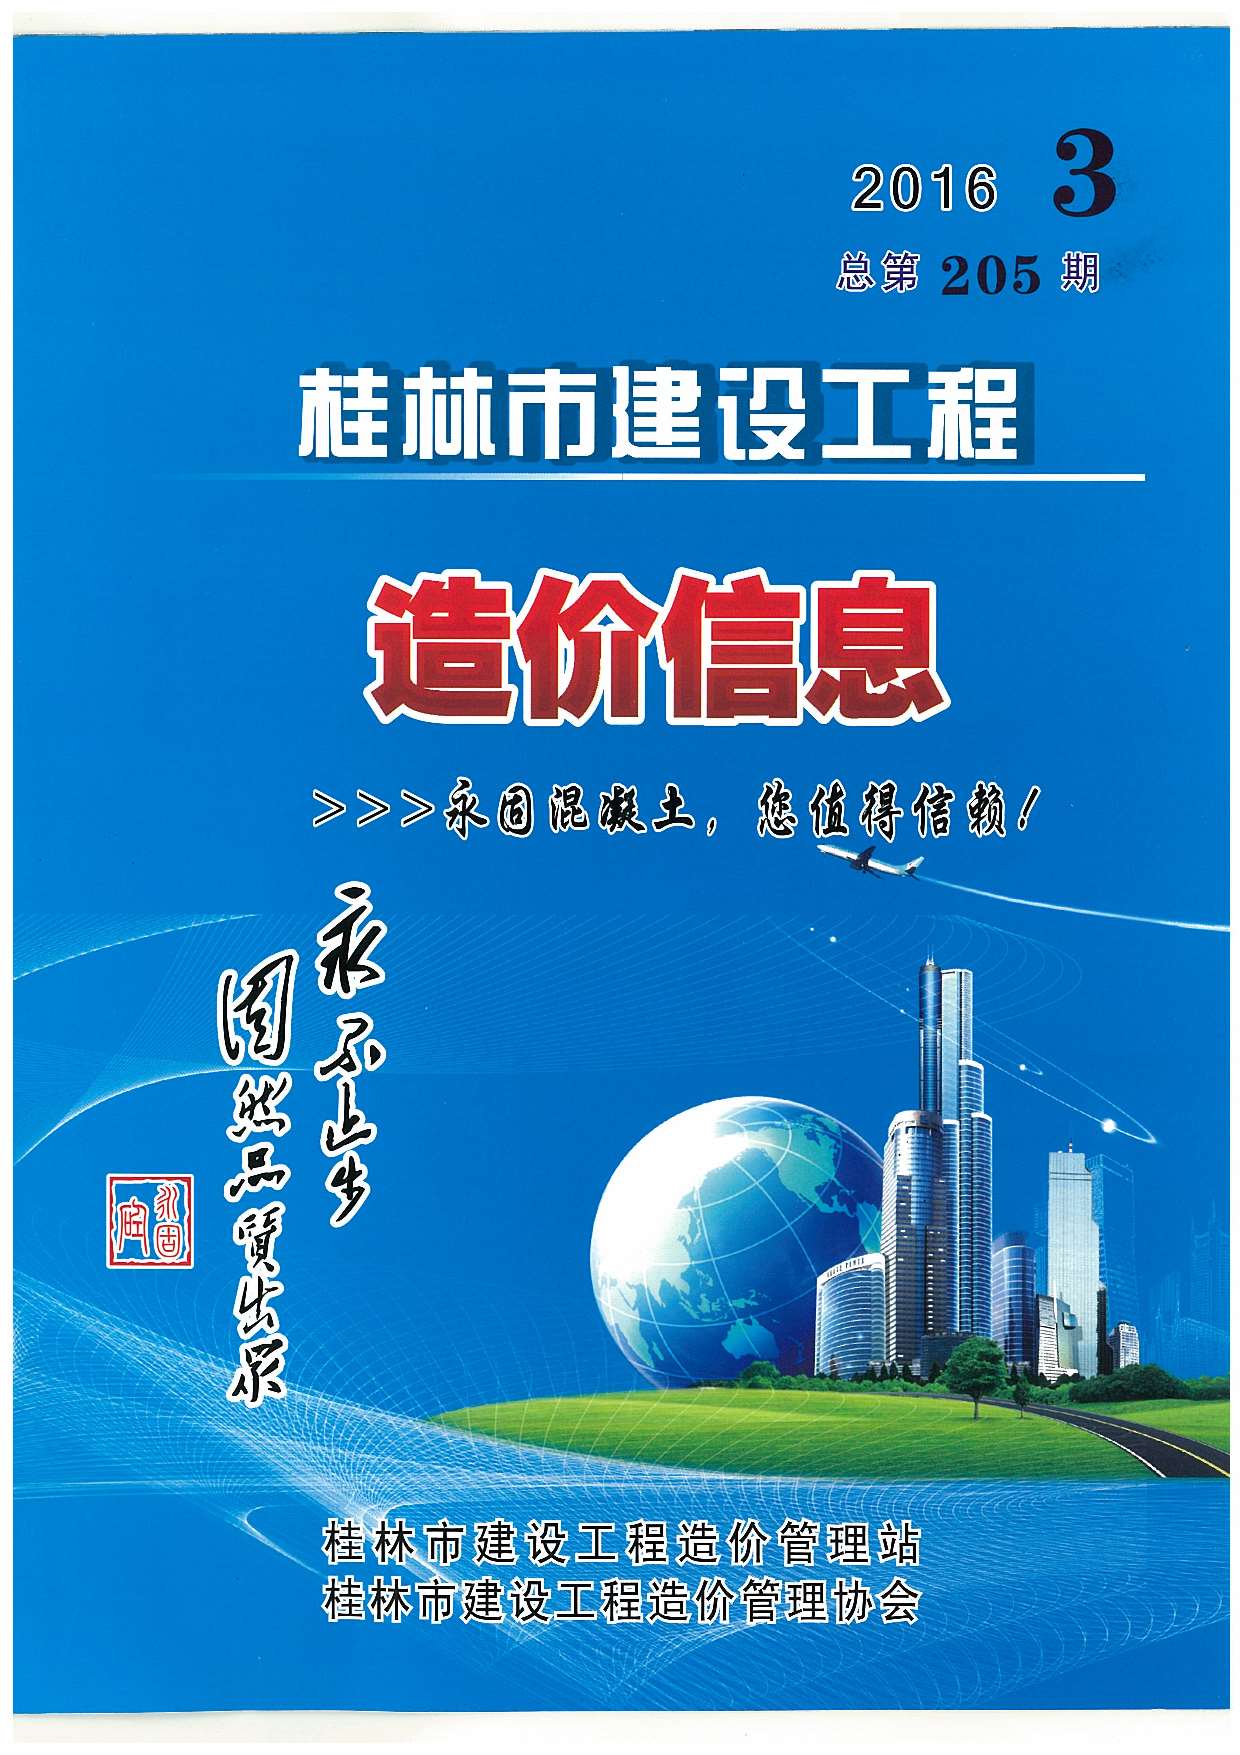 桂林市2016年3月建设工程造价信息造价库信息价